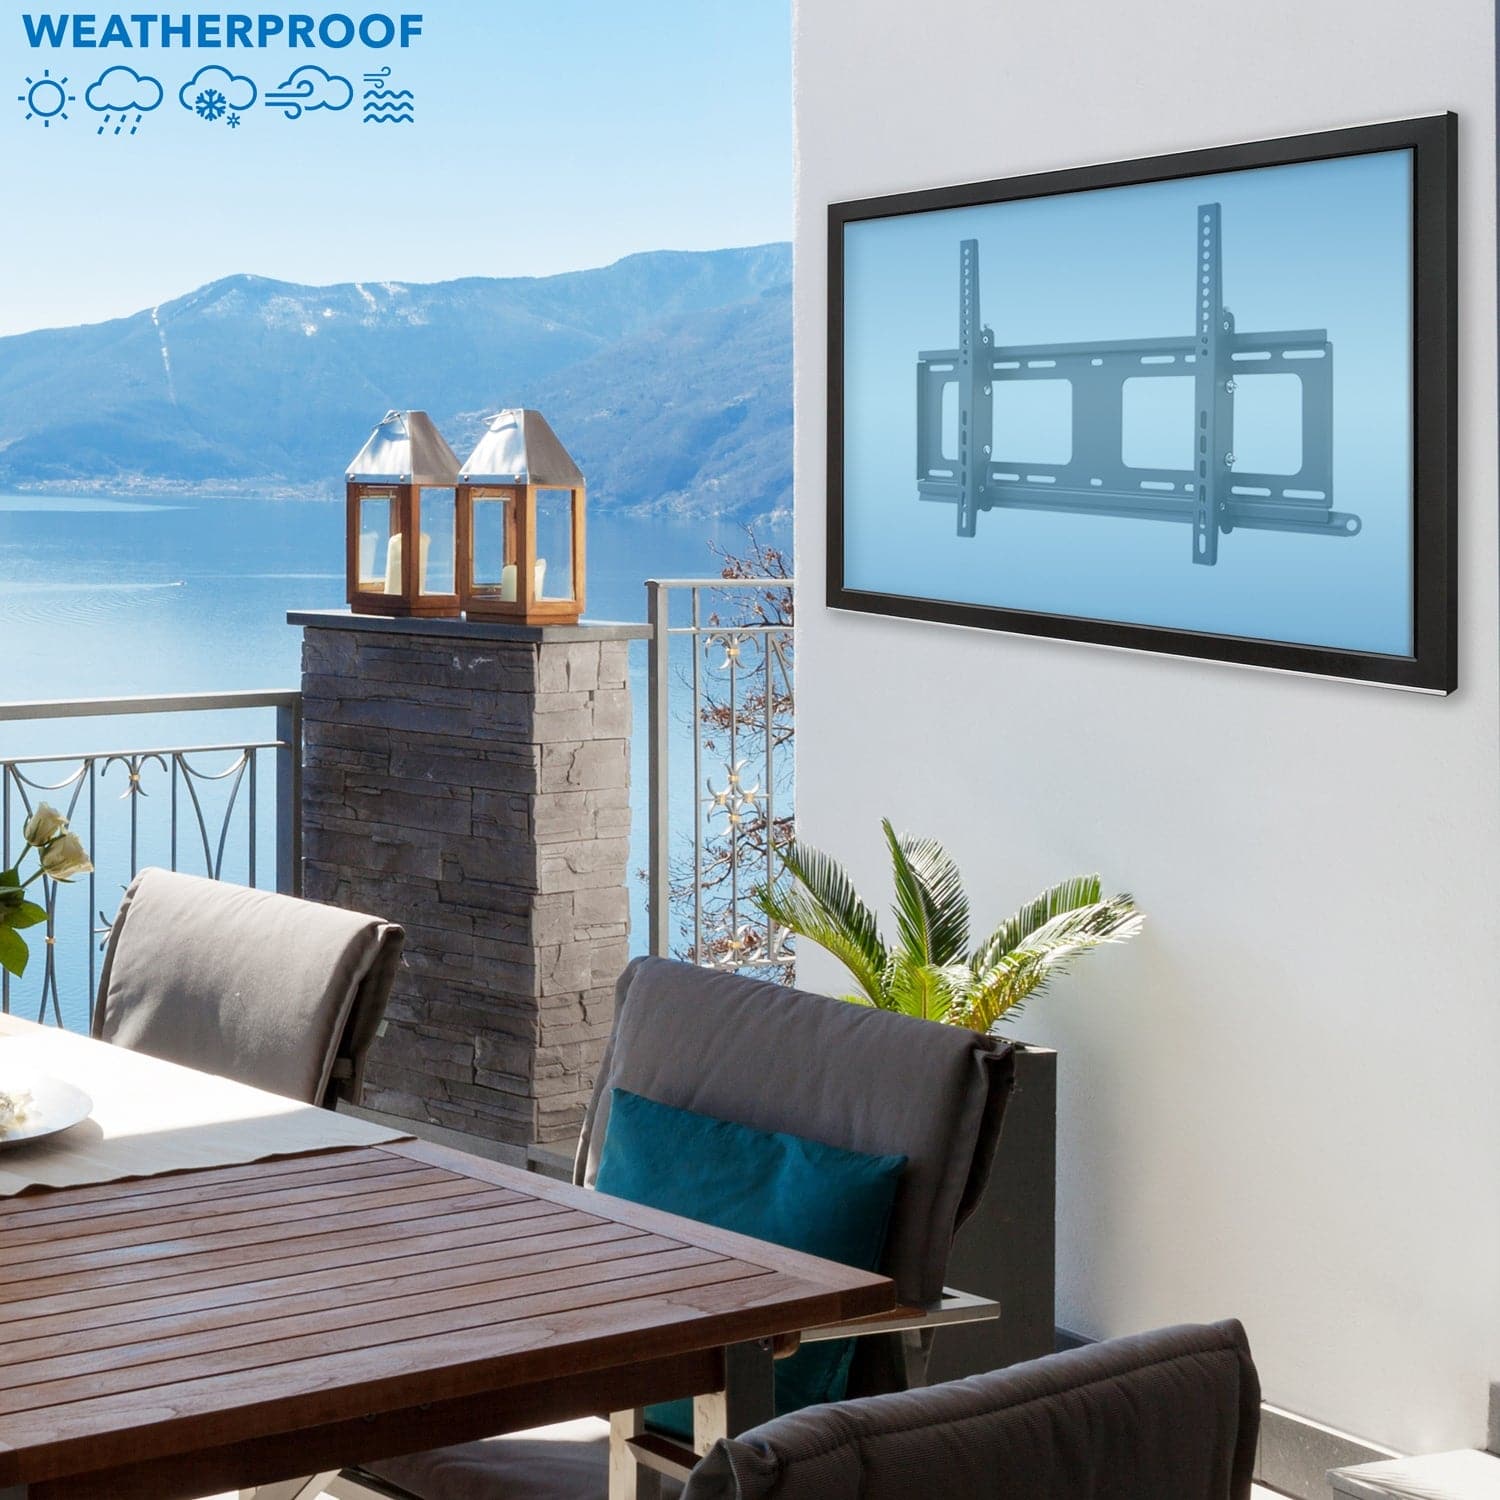 Weatherproof Outdoor TV Wall Mount